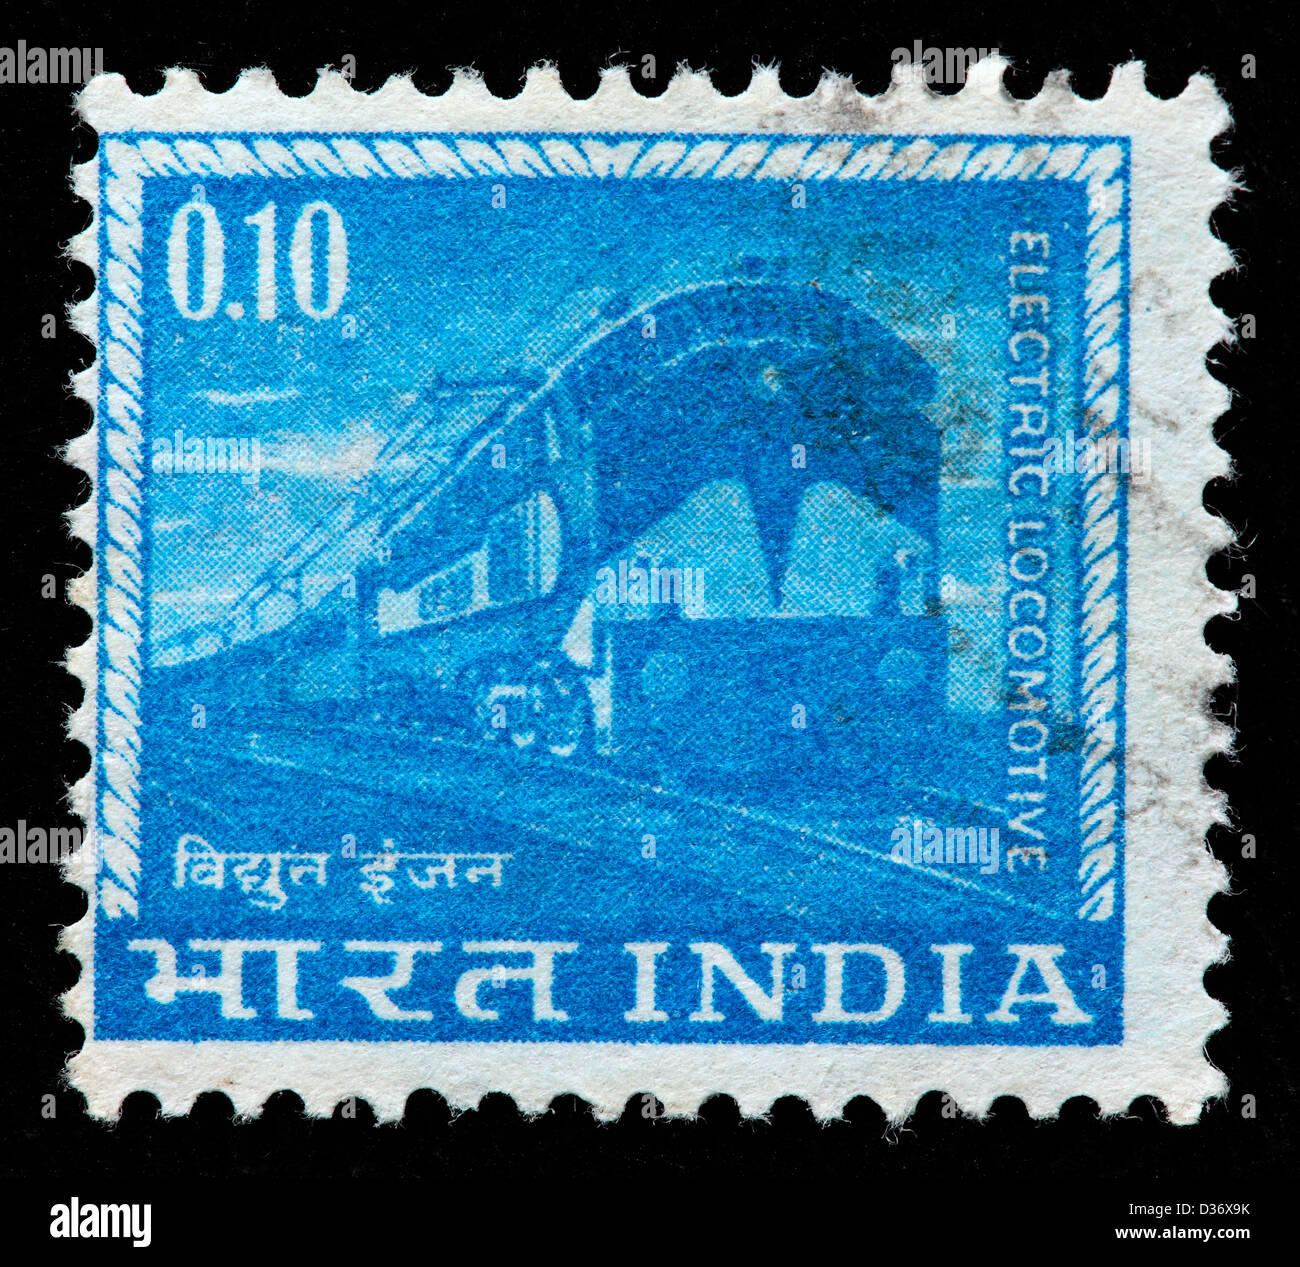 Electric locomotive, postage stamp, India, 1961 Stock Photo